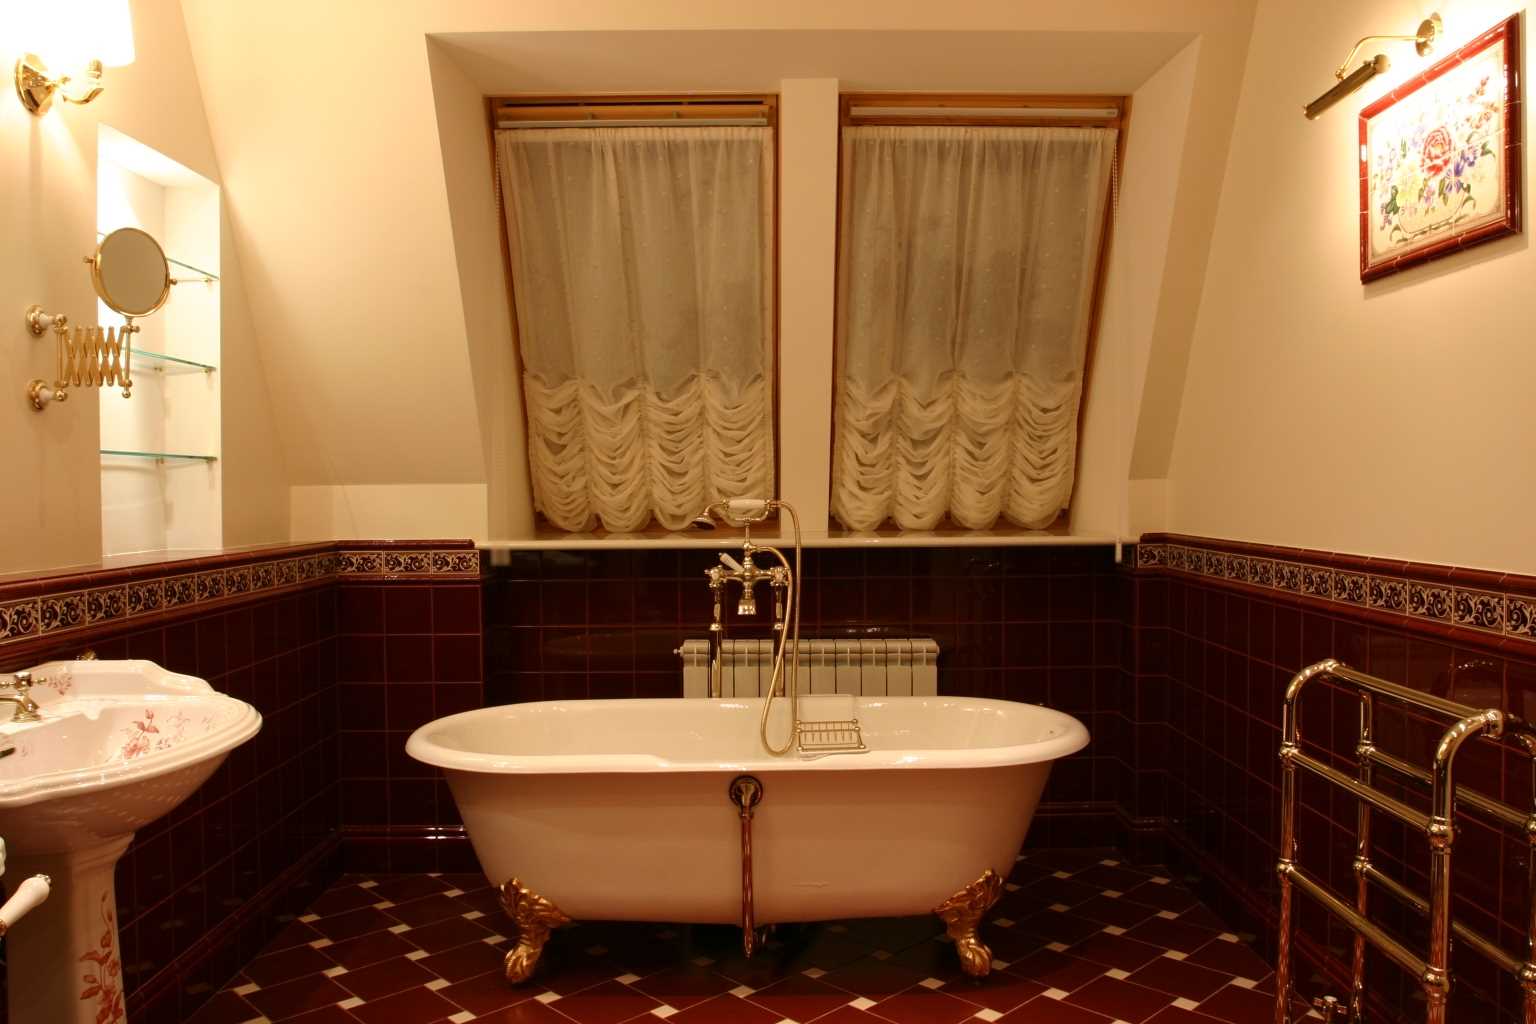 option d'une salle de bain claire dans un style classique